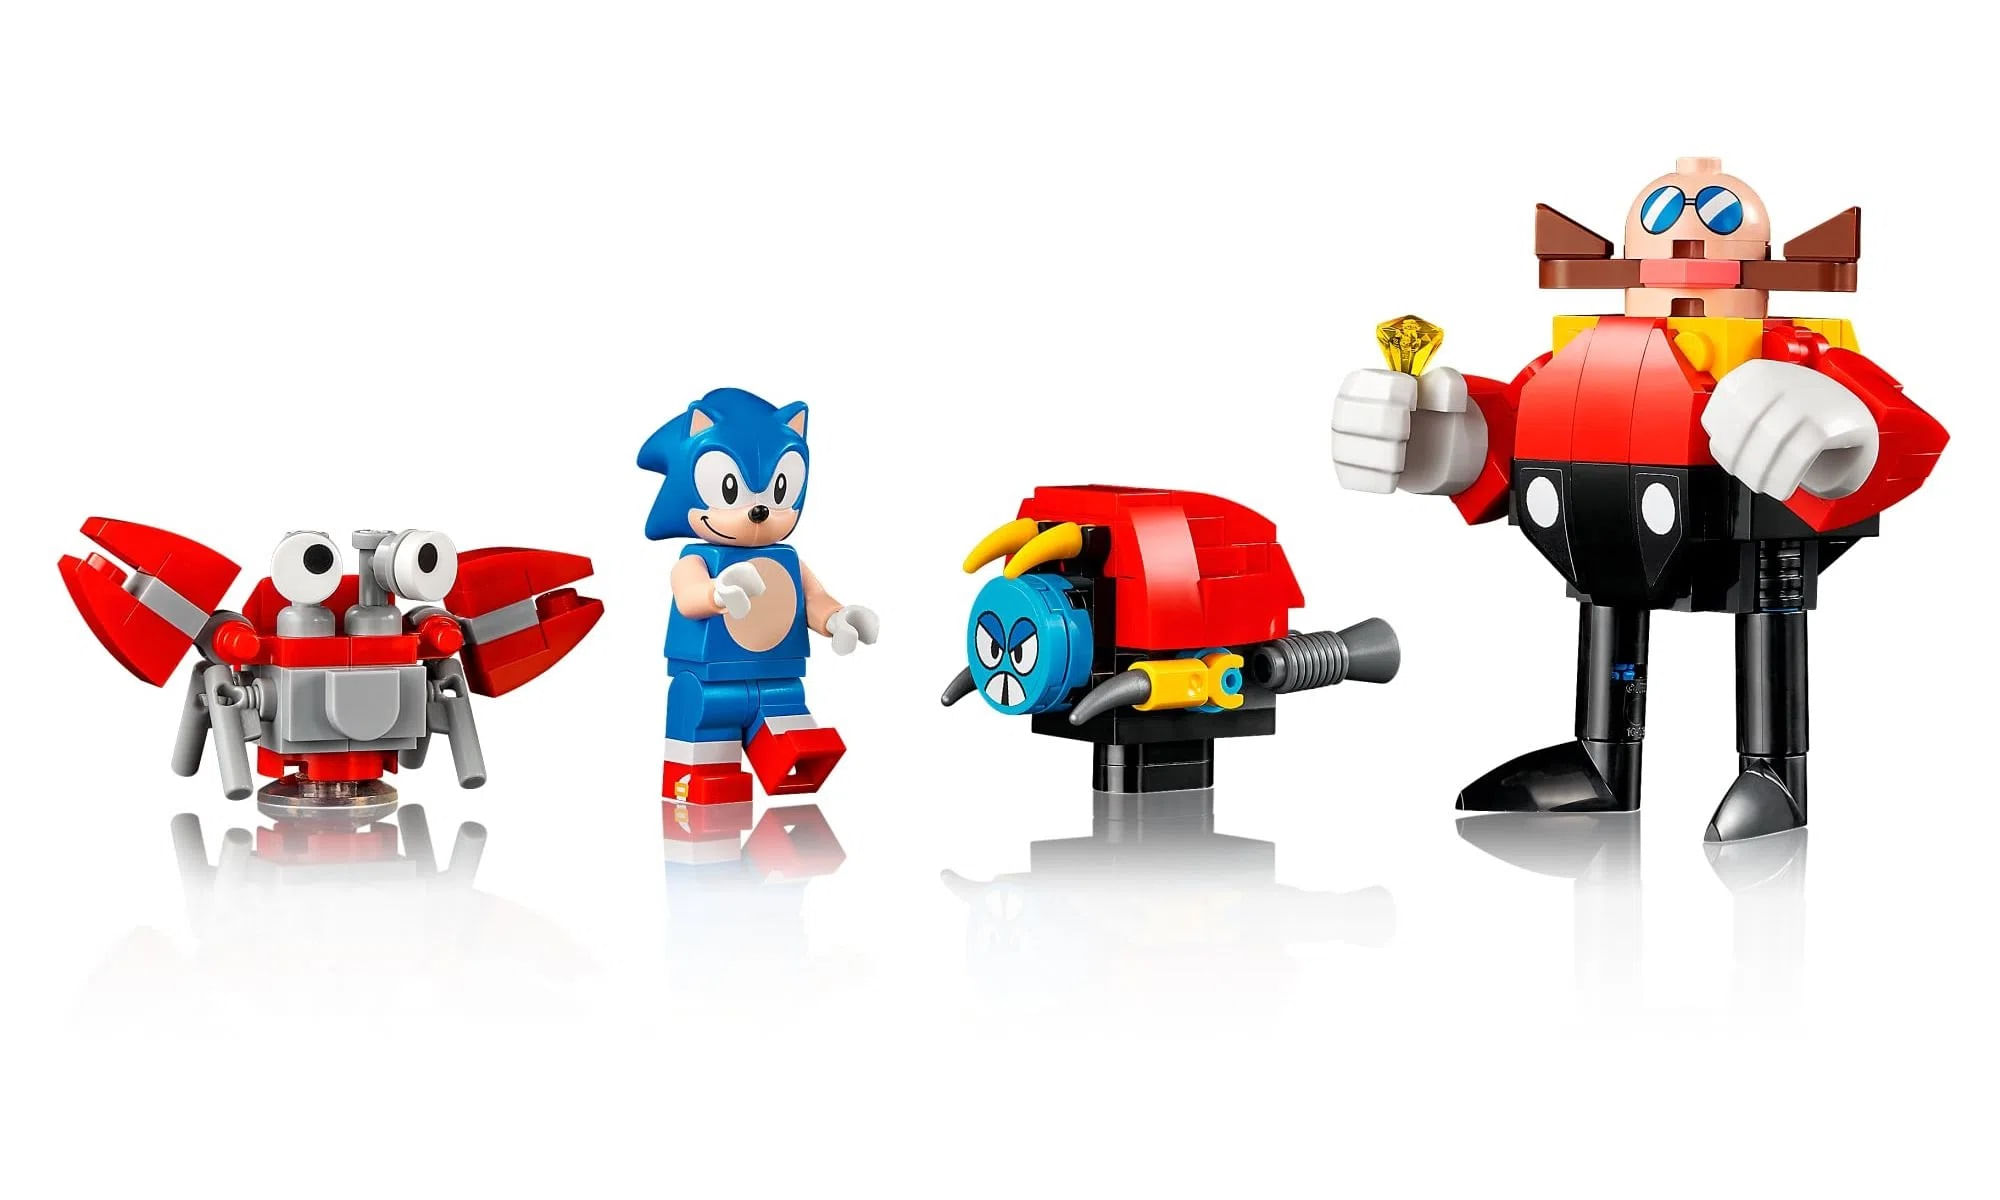 LEGO irá produzir conjunto de Sonic The Hedgehog projetado por fã